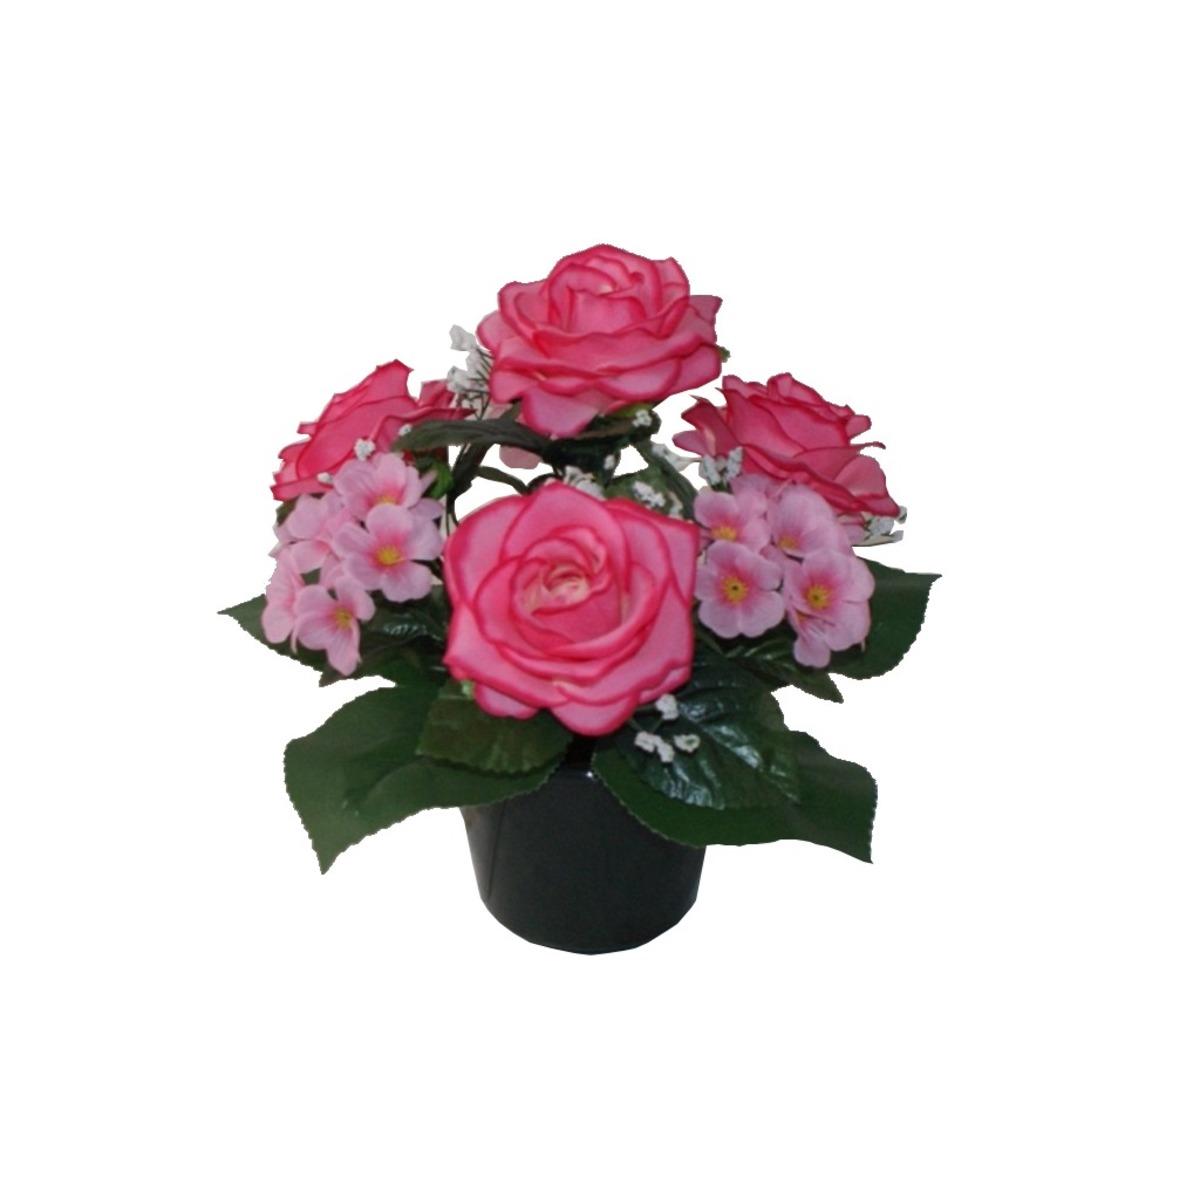 Potée roses + hortensias - Hauteur 30 cm - Rose